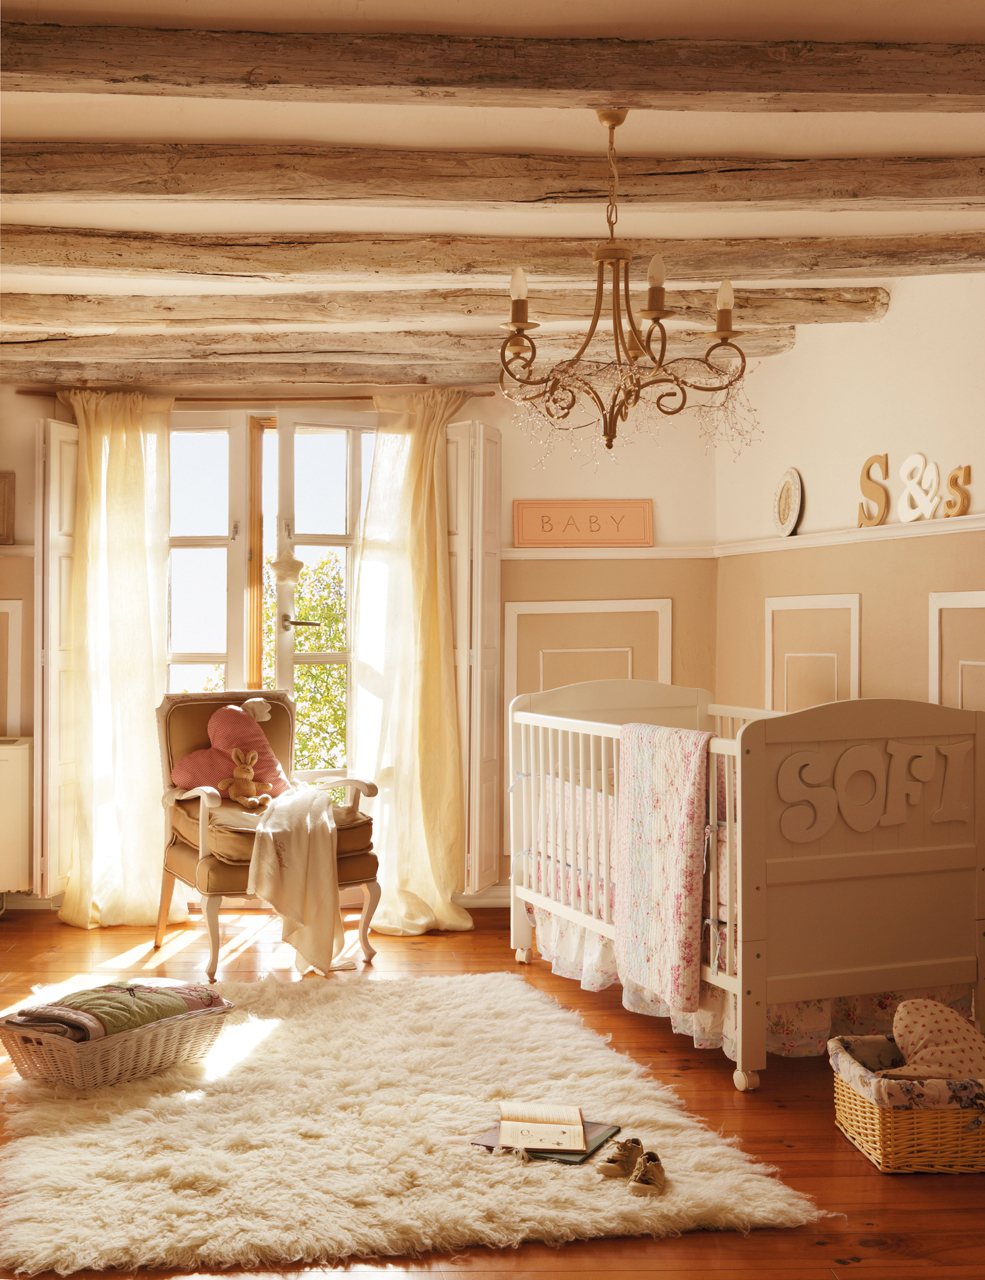 Для оформления потолка детской комнаты в стиле прованс прекрасно подойдут декоративные балки с неровной обработкой светло-коричневого цвета